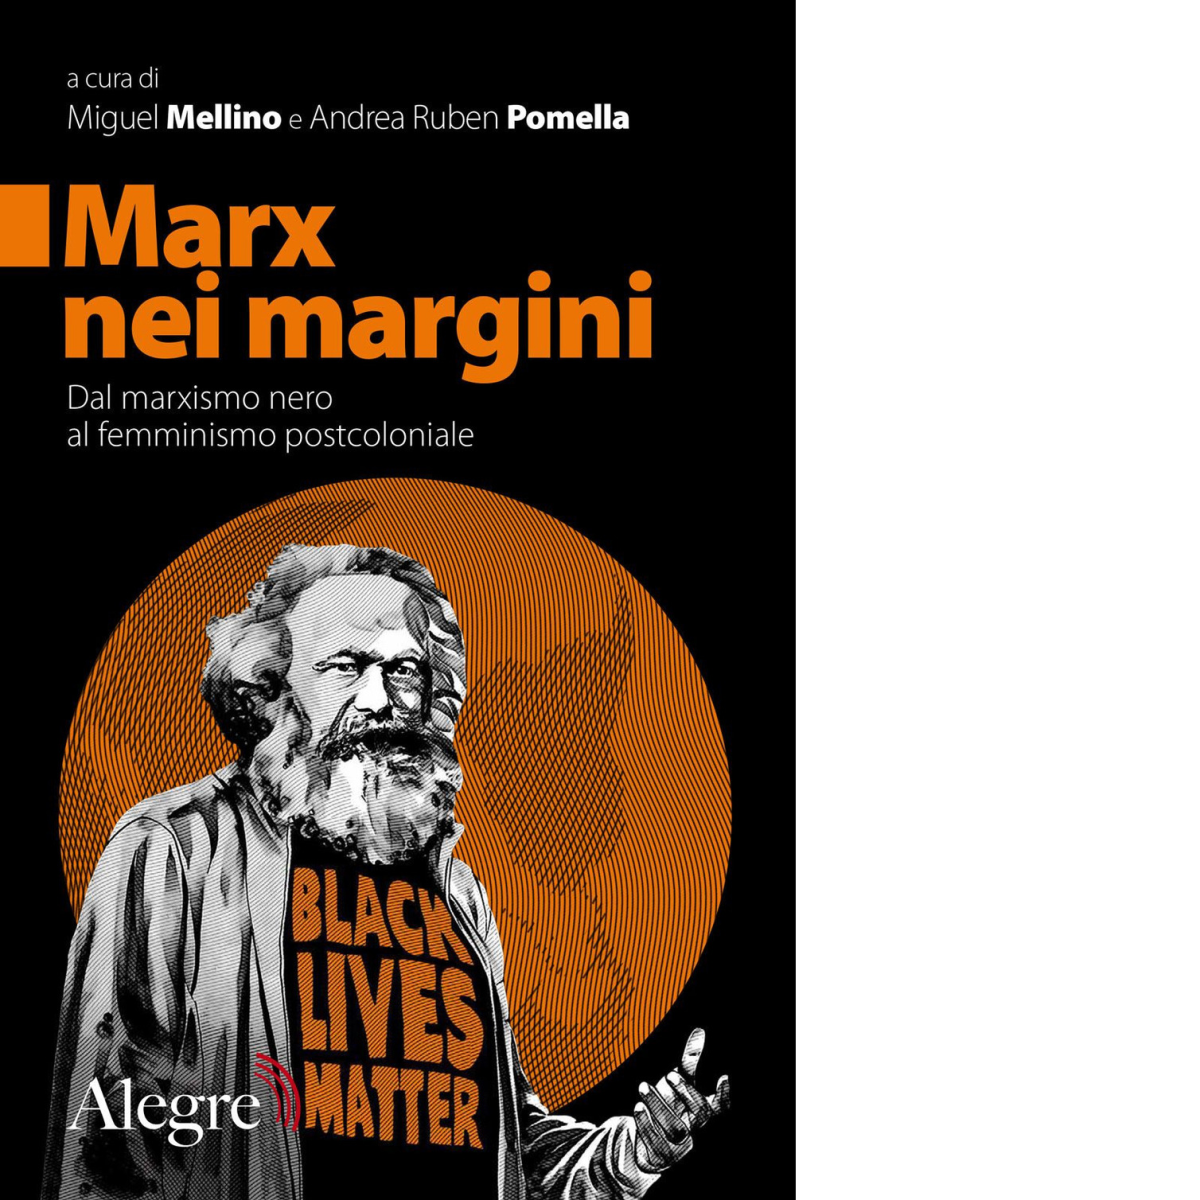 Marx nei margini. di M. Mellino, A. R. Pomella - edizioni alegre, 2019